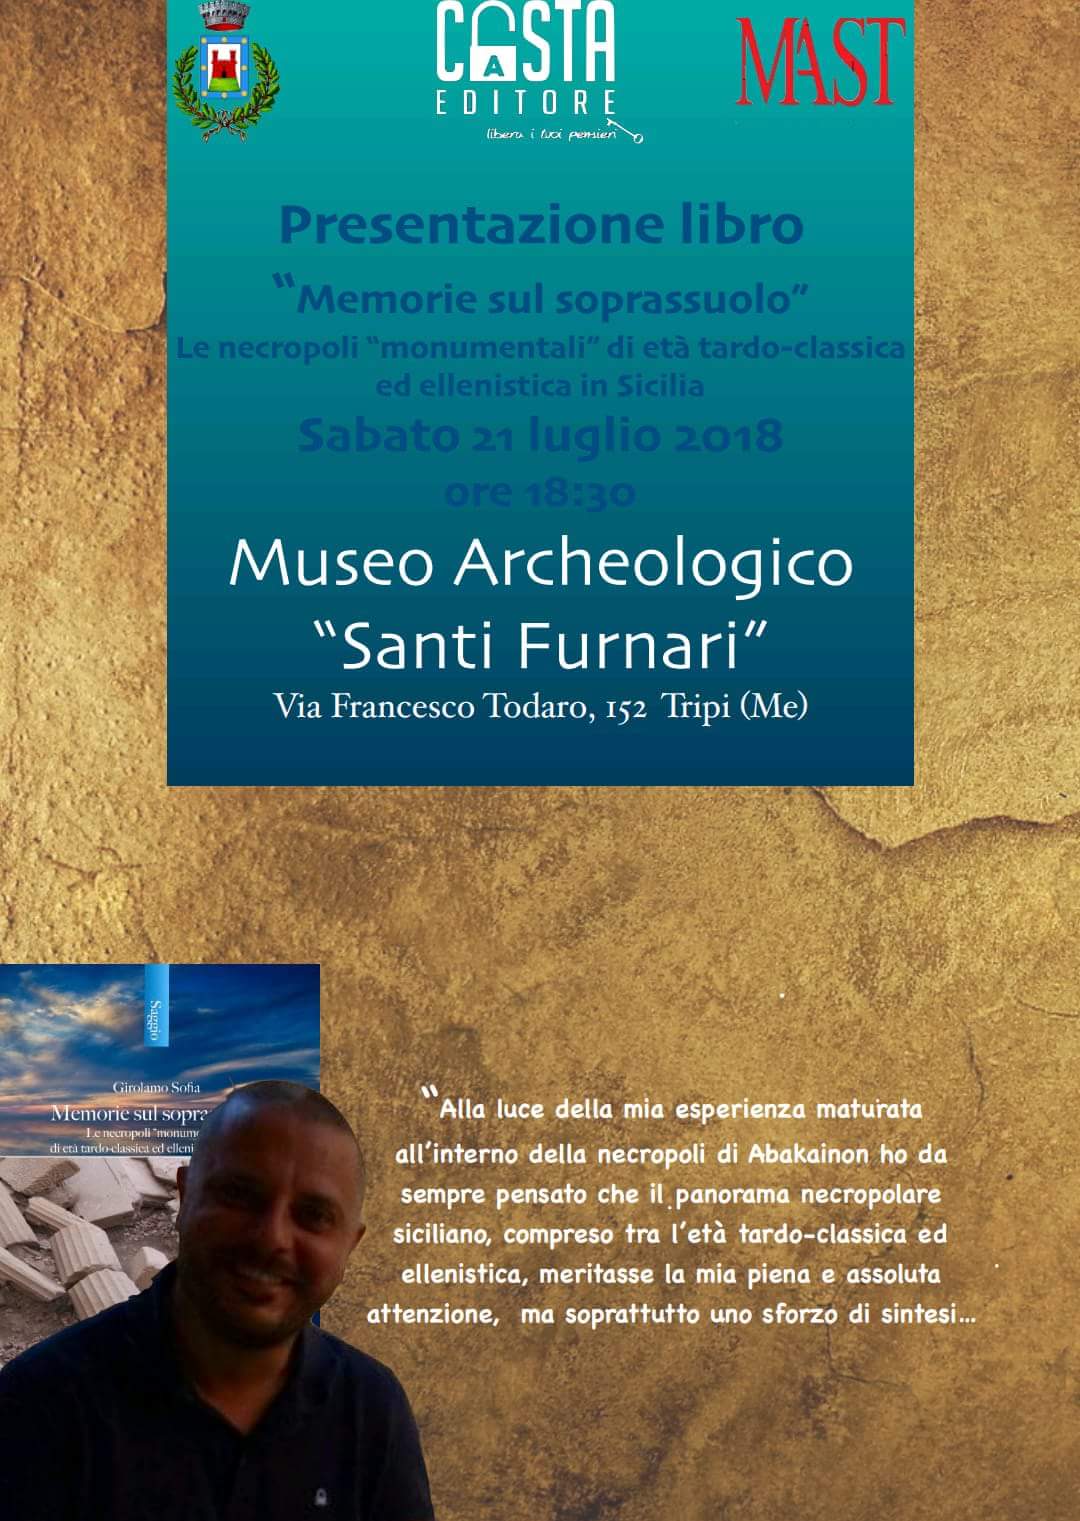 Tripi. L’archeologo Girolamo Sofia presenta “Memorie sul soprassuolo” al Museo Archeologico “Santi Furnari”